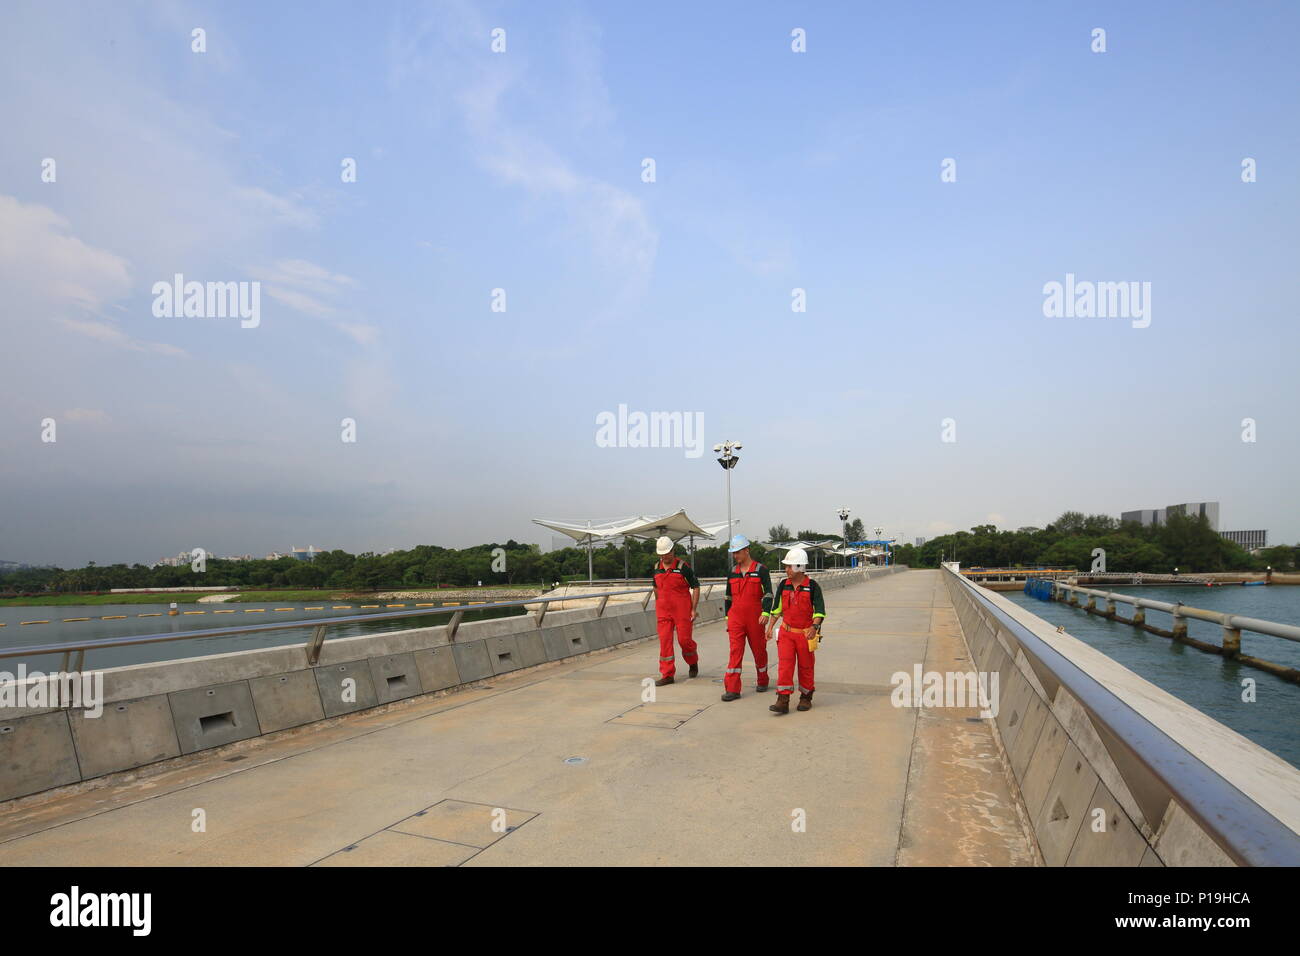 Trois travailleurs industriels en tenue de travail rouge marchant le long du barrage de barrage de barrage de barrage de la marina. Singapour. Banque D'Images